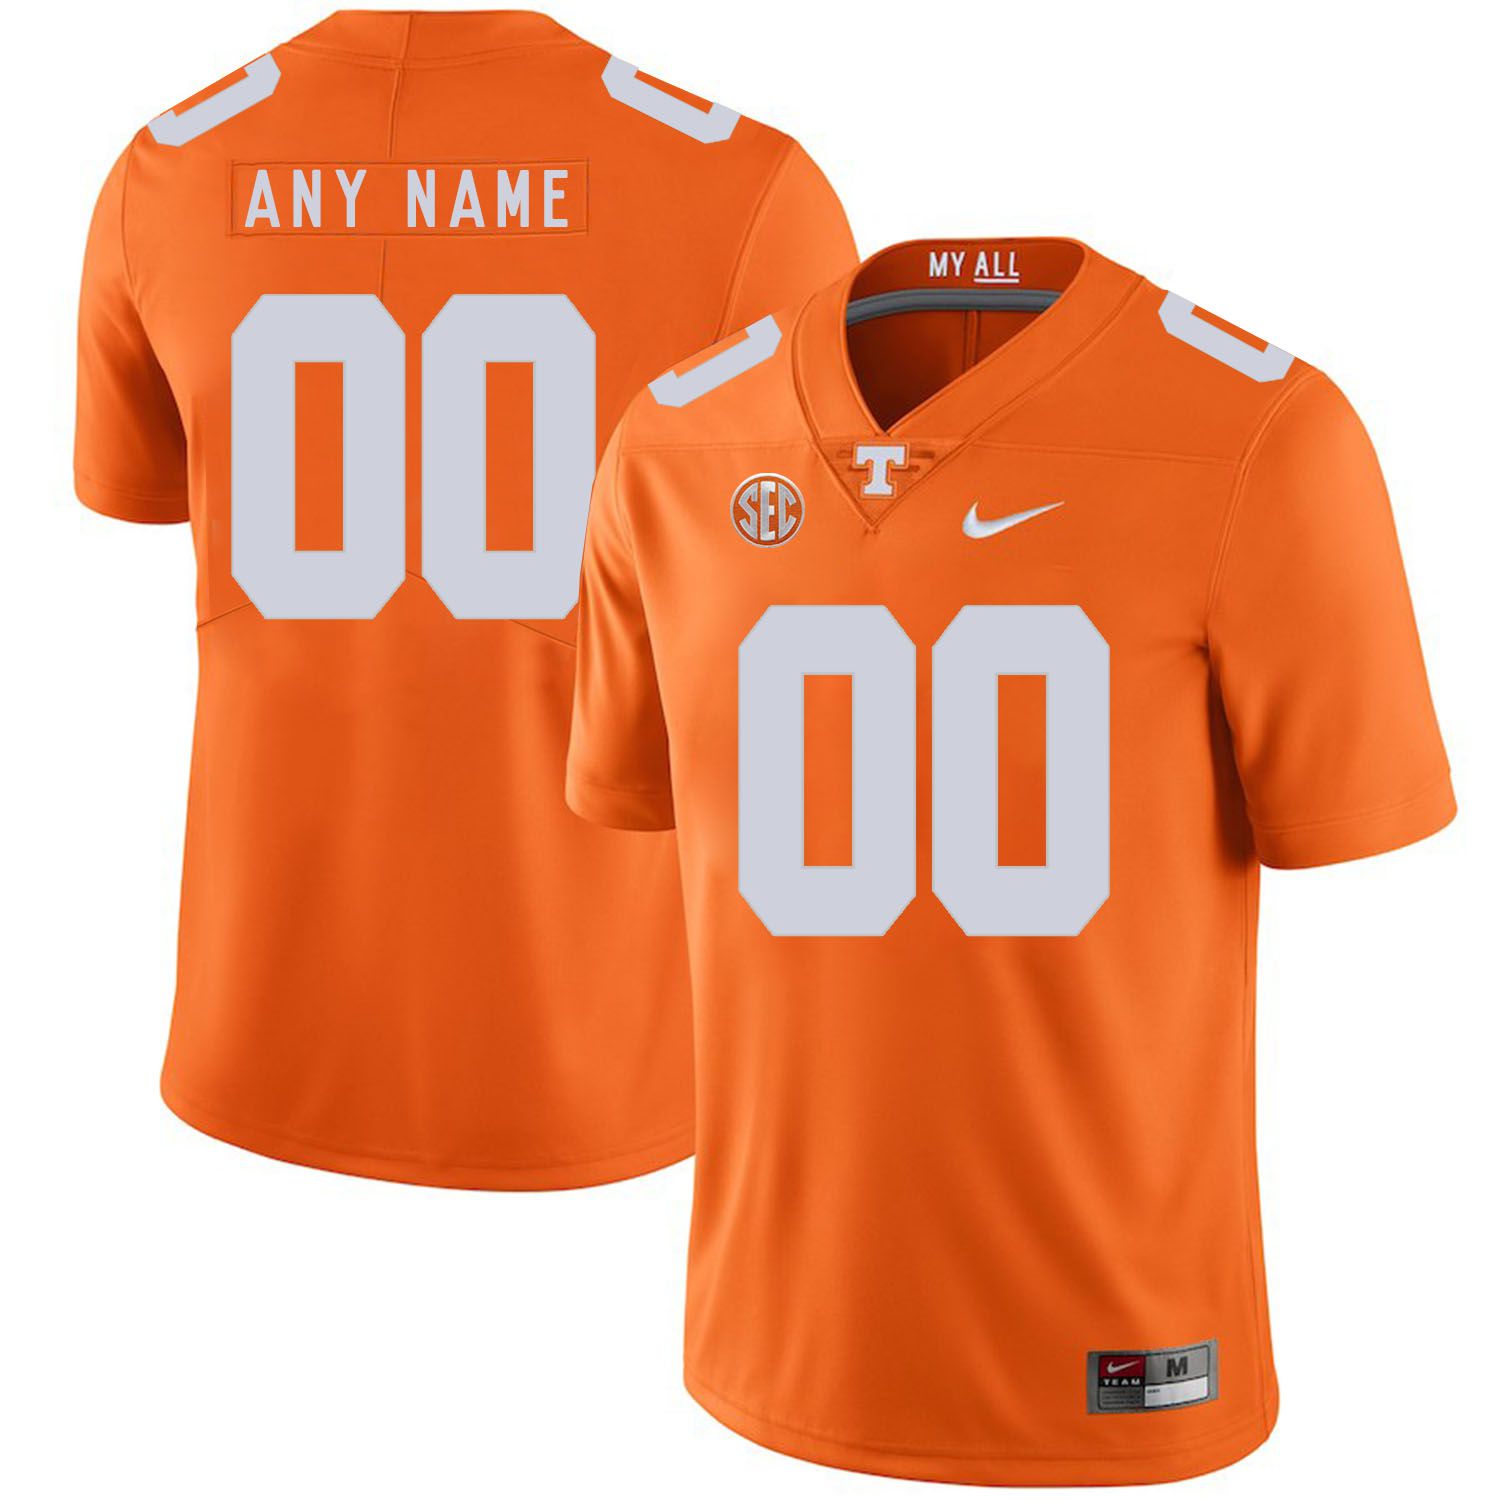 Men Tennessee Volunteers #00 Any name Orange Customized NCAA Jerseys->customized ncaa jersey->Custom Jersey